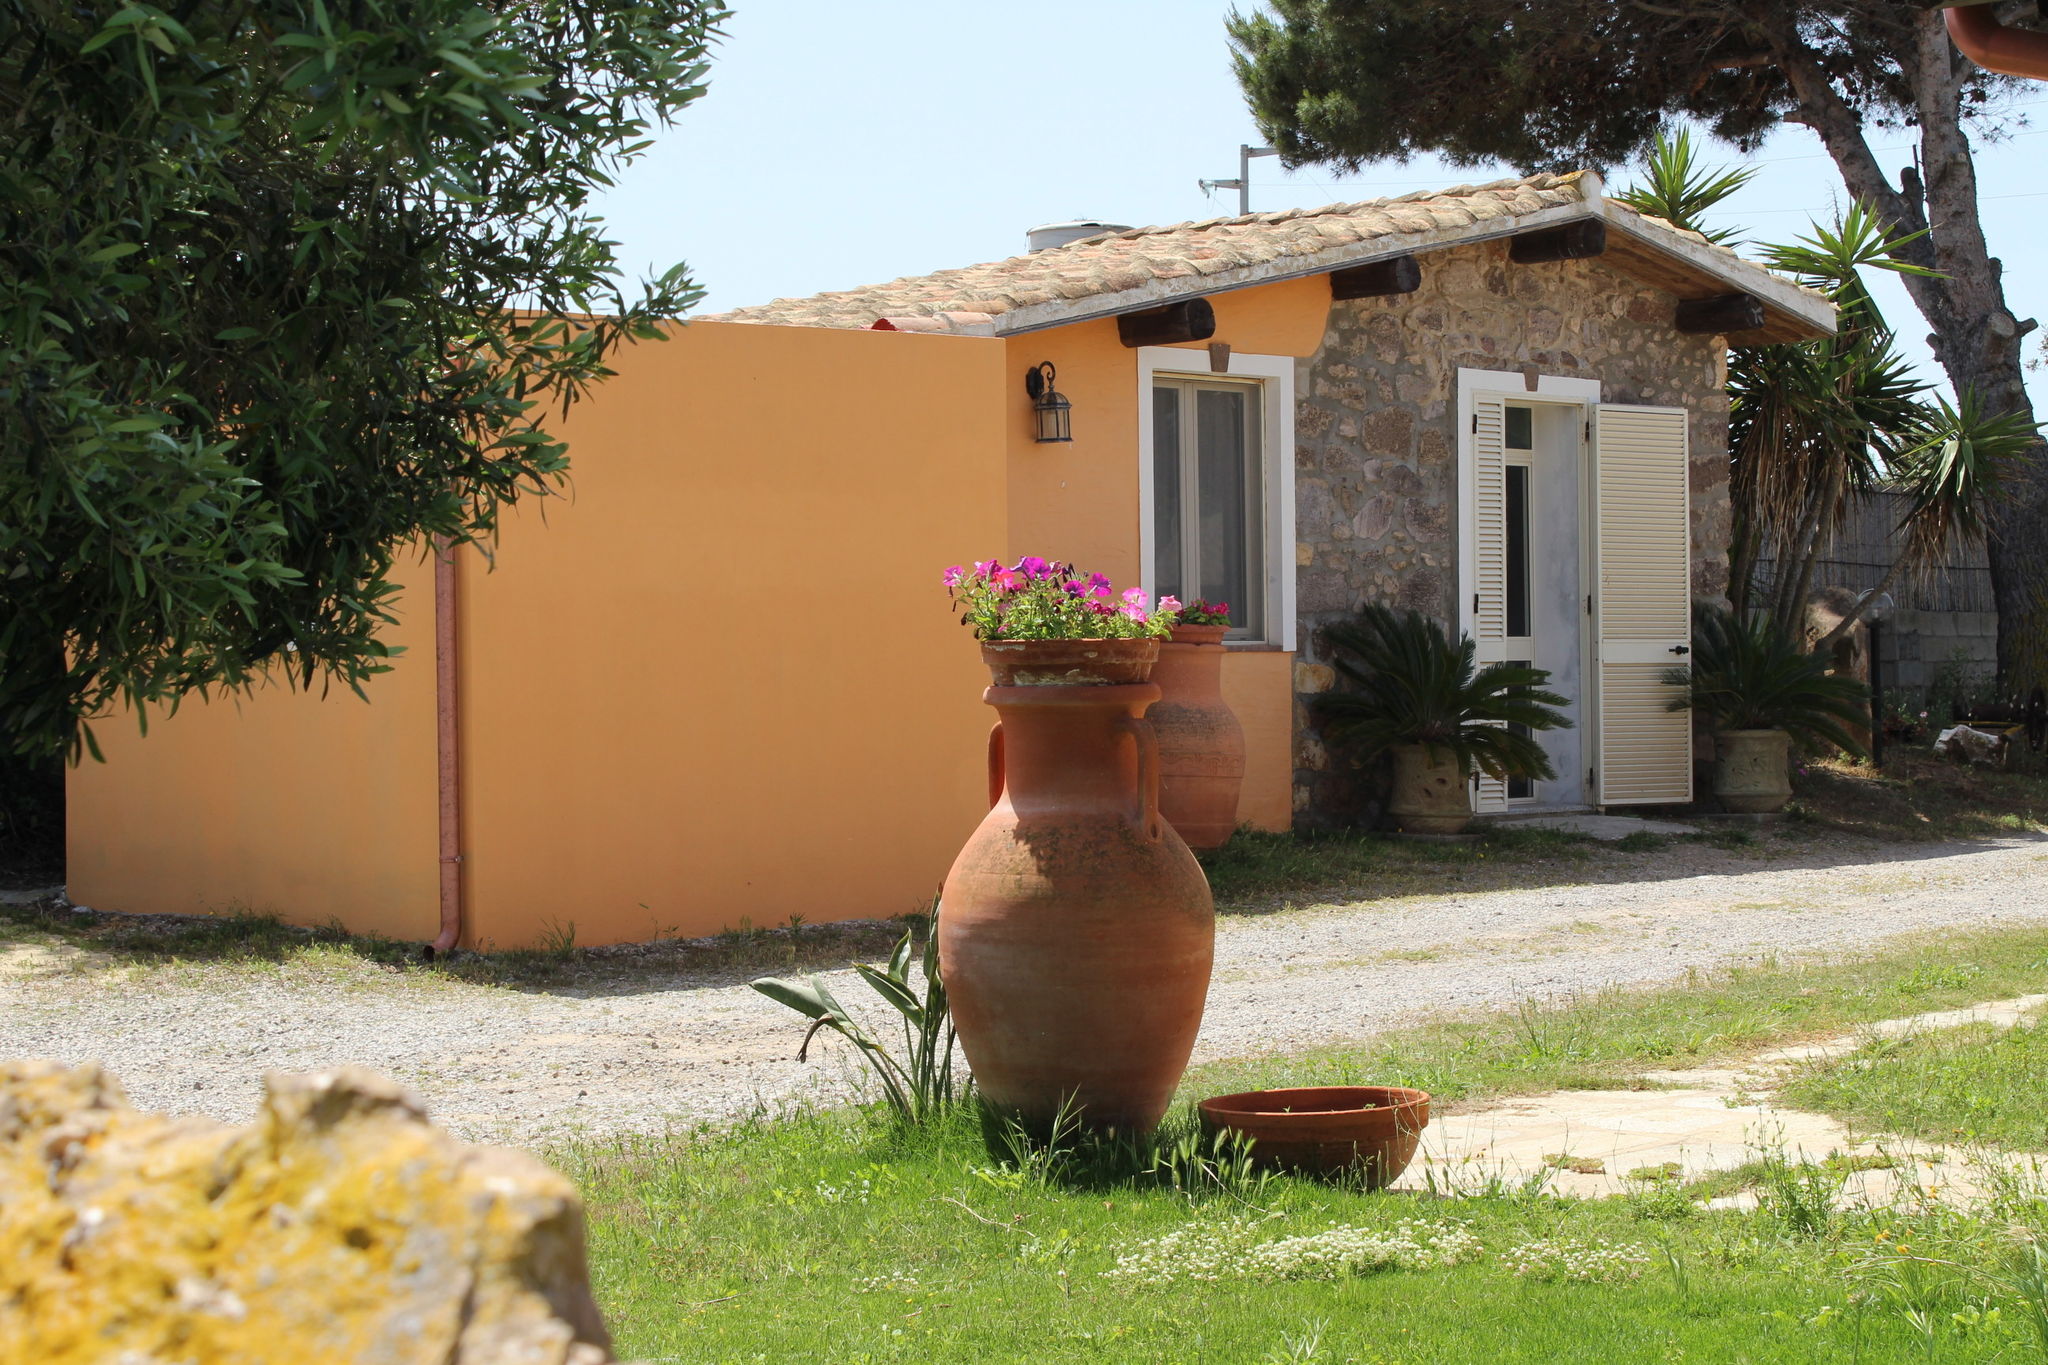 Gezellige cottage op Sant'Antioco nabij zee